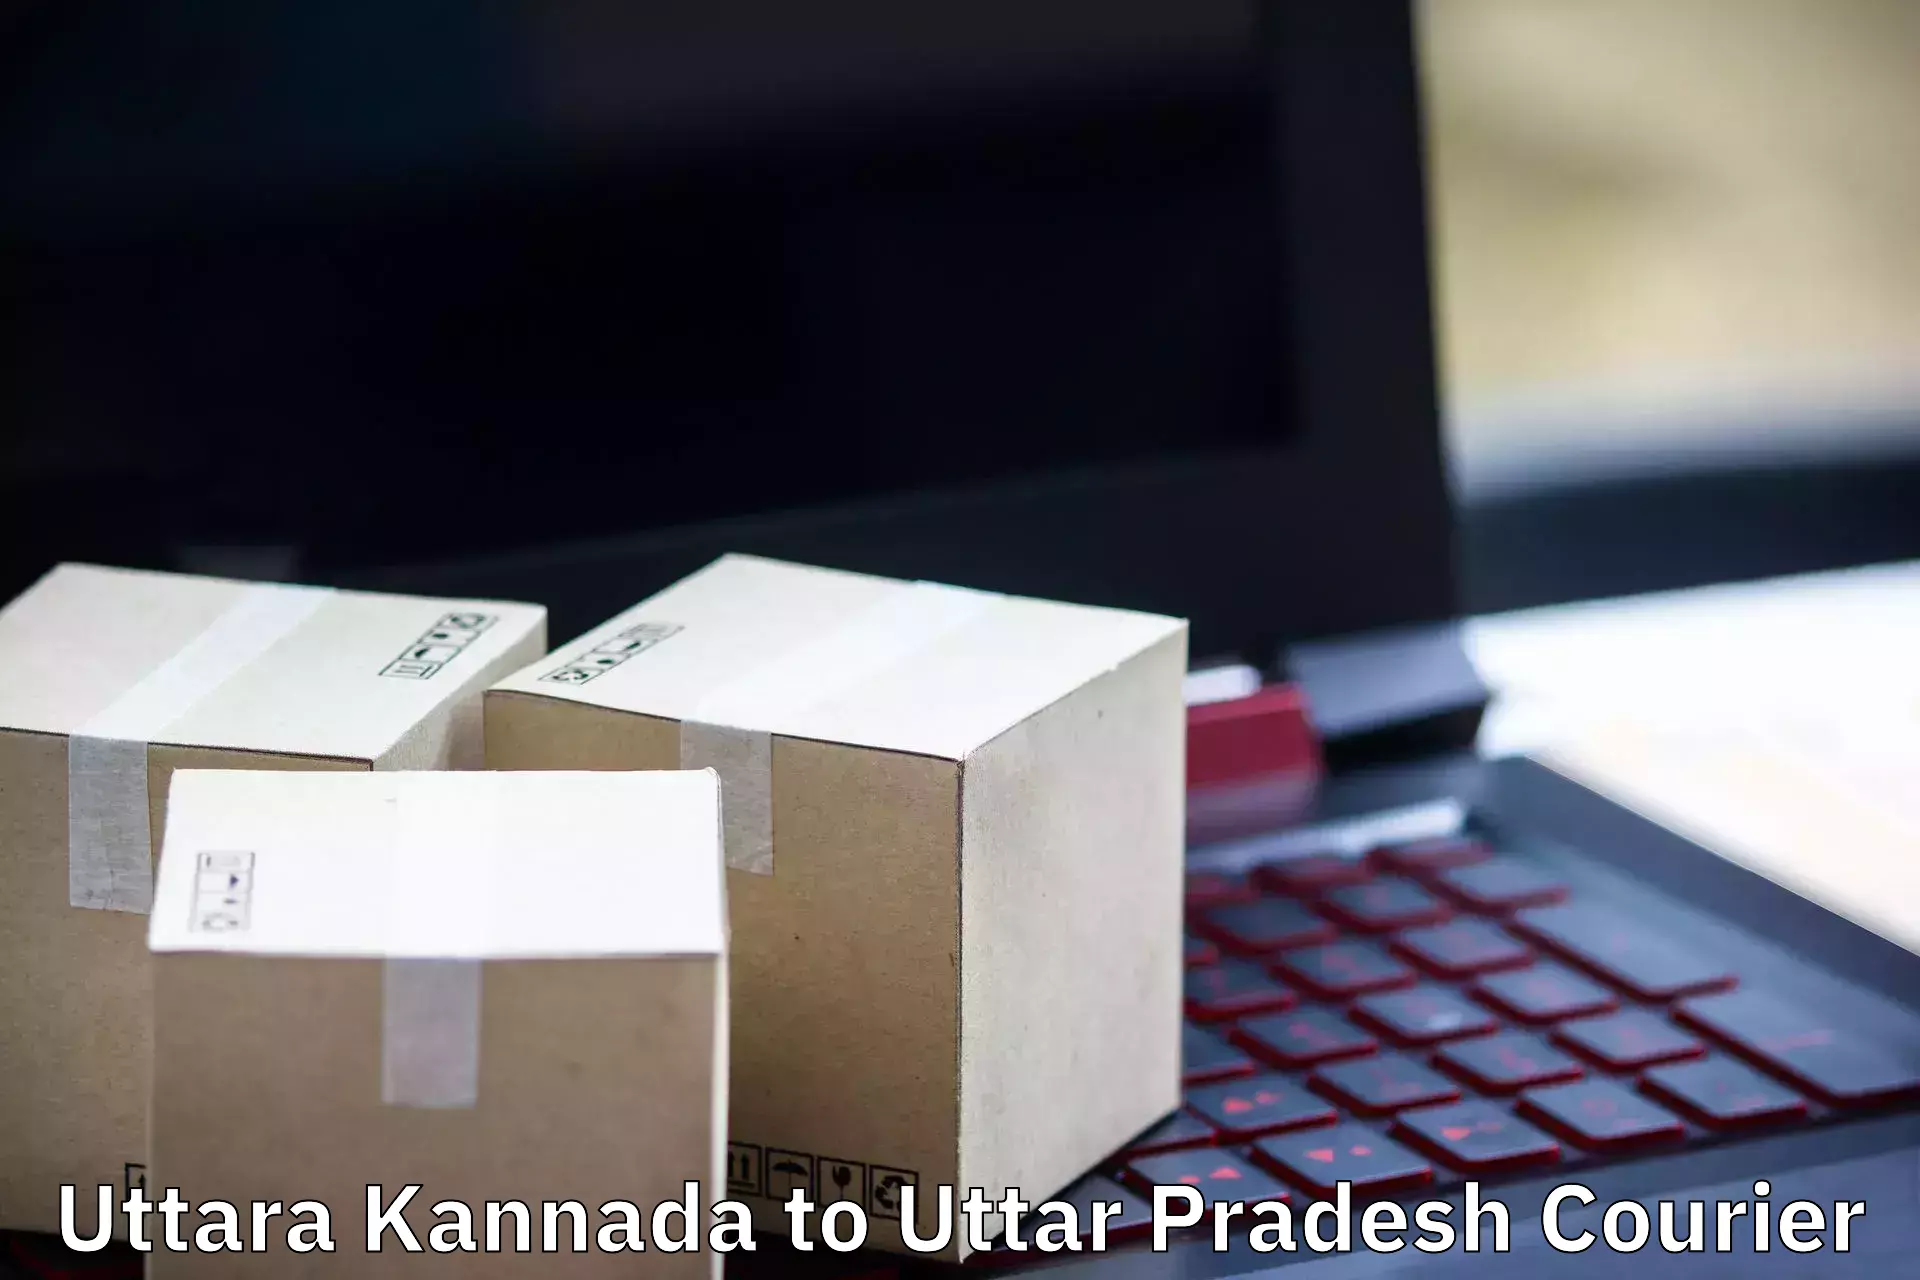 Efficient relocation services in Uttara Kannada to Meerut